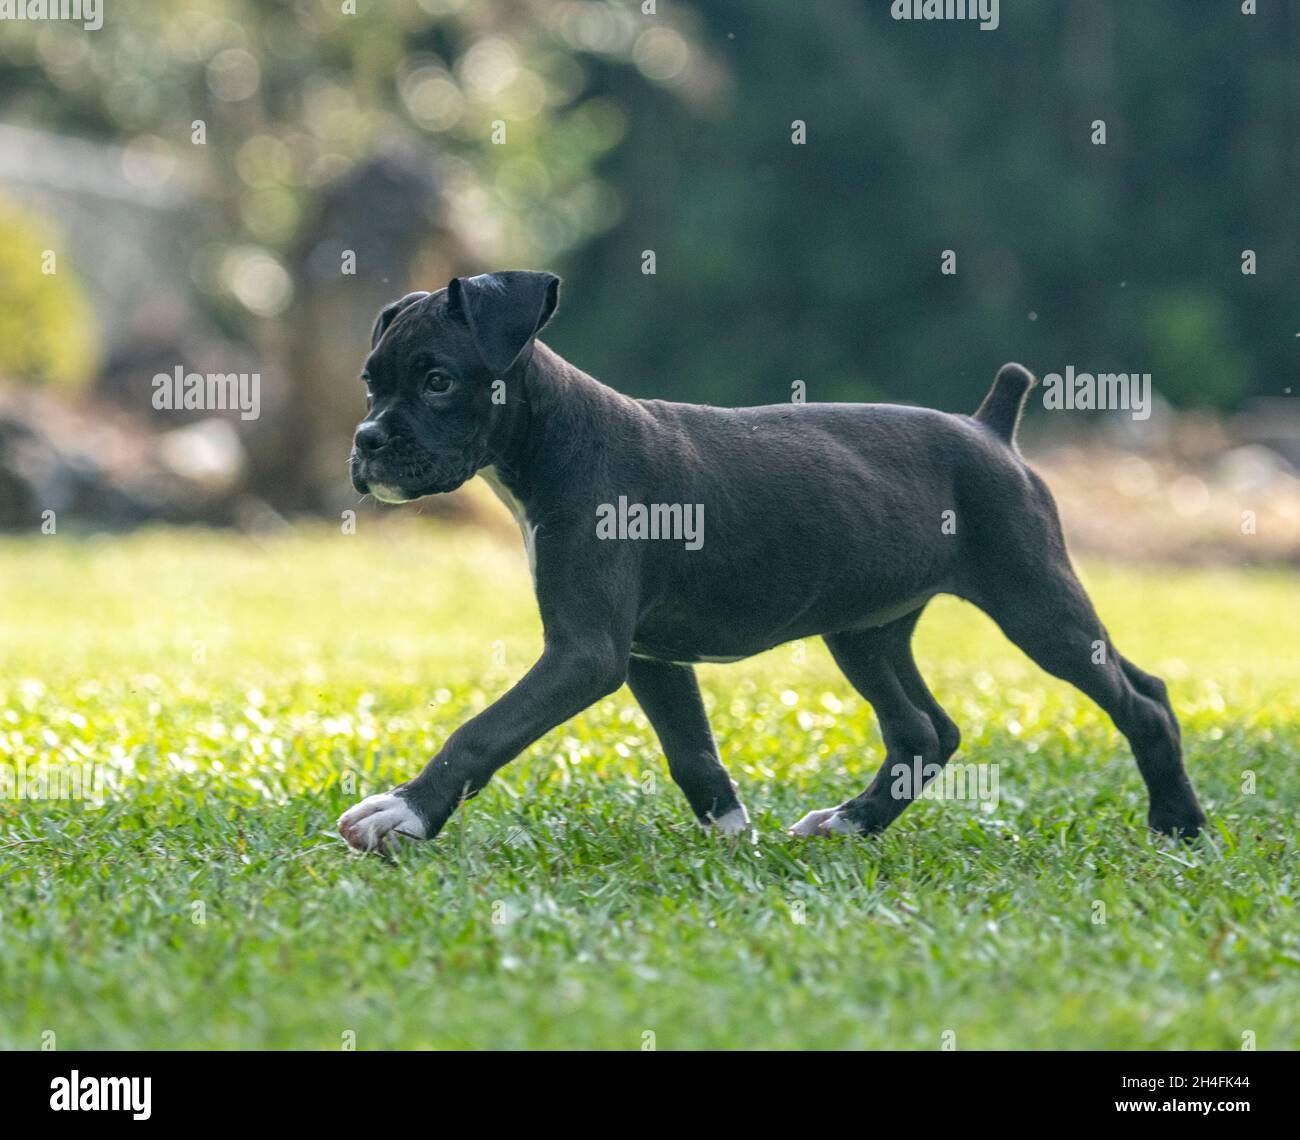 Alarm 9 Wochen alte schwarze Boxer Hund Welpen spielt auf Rasen  Stockfotografie - Alamy